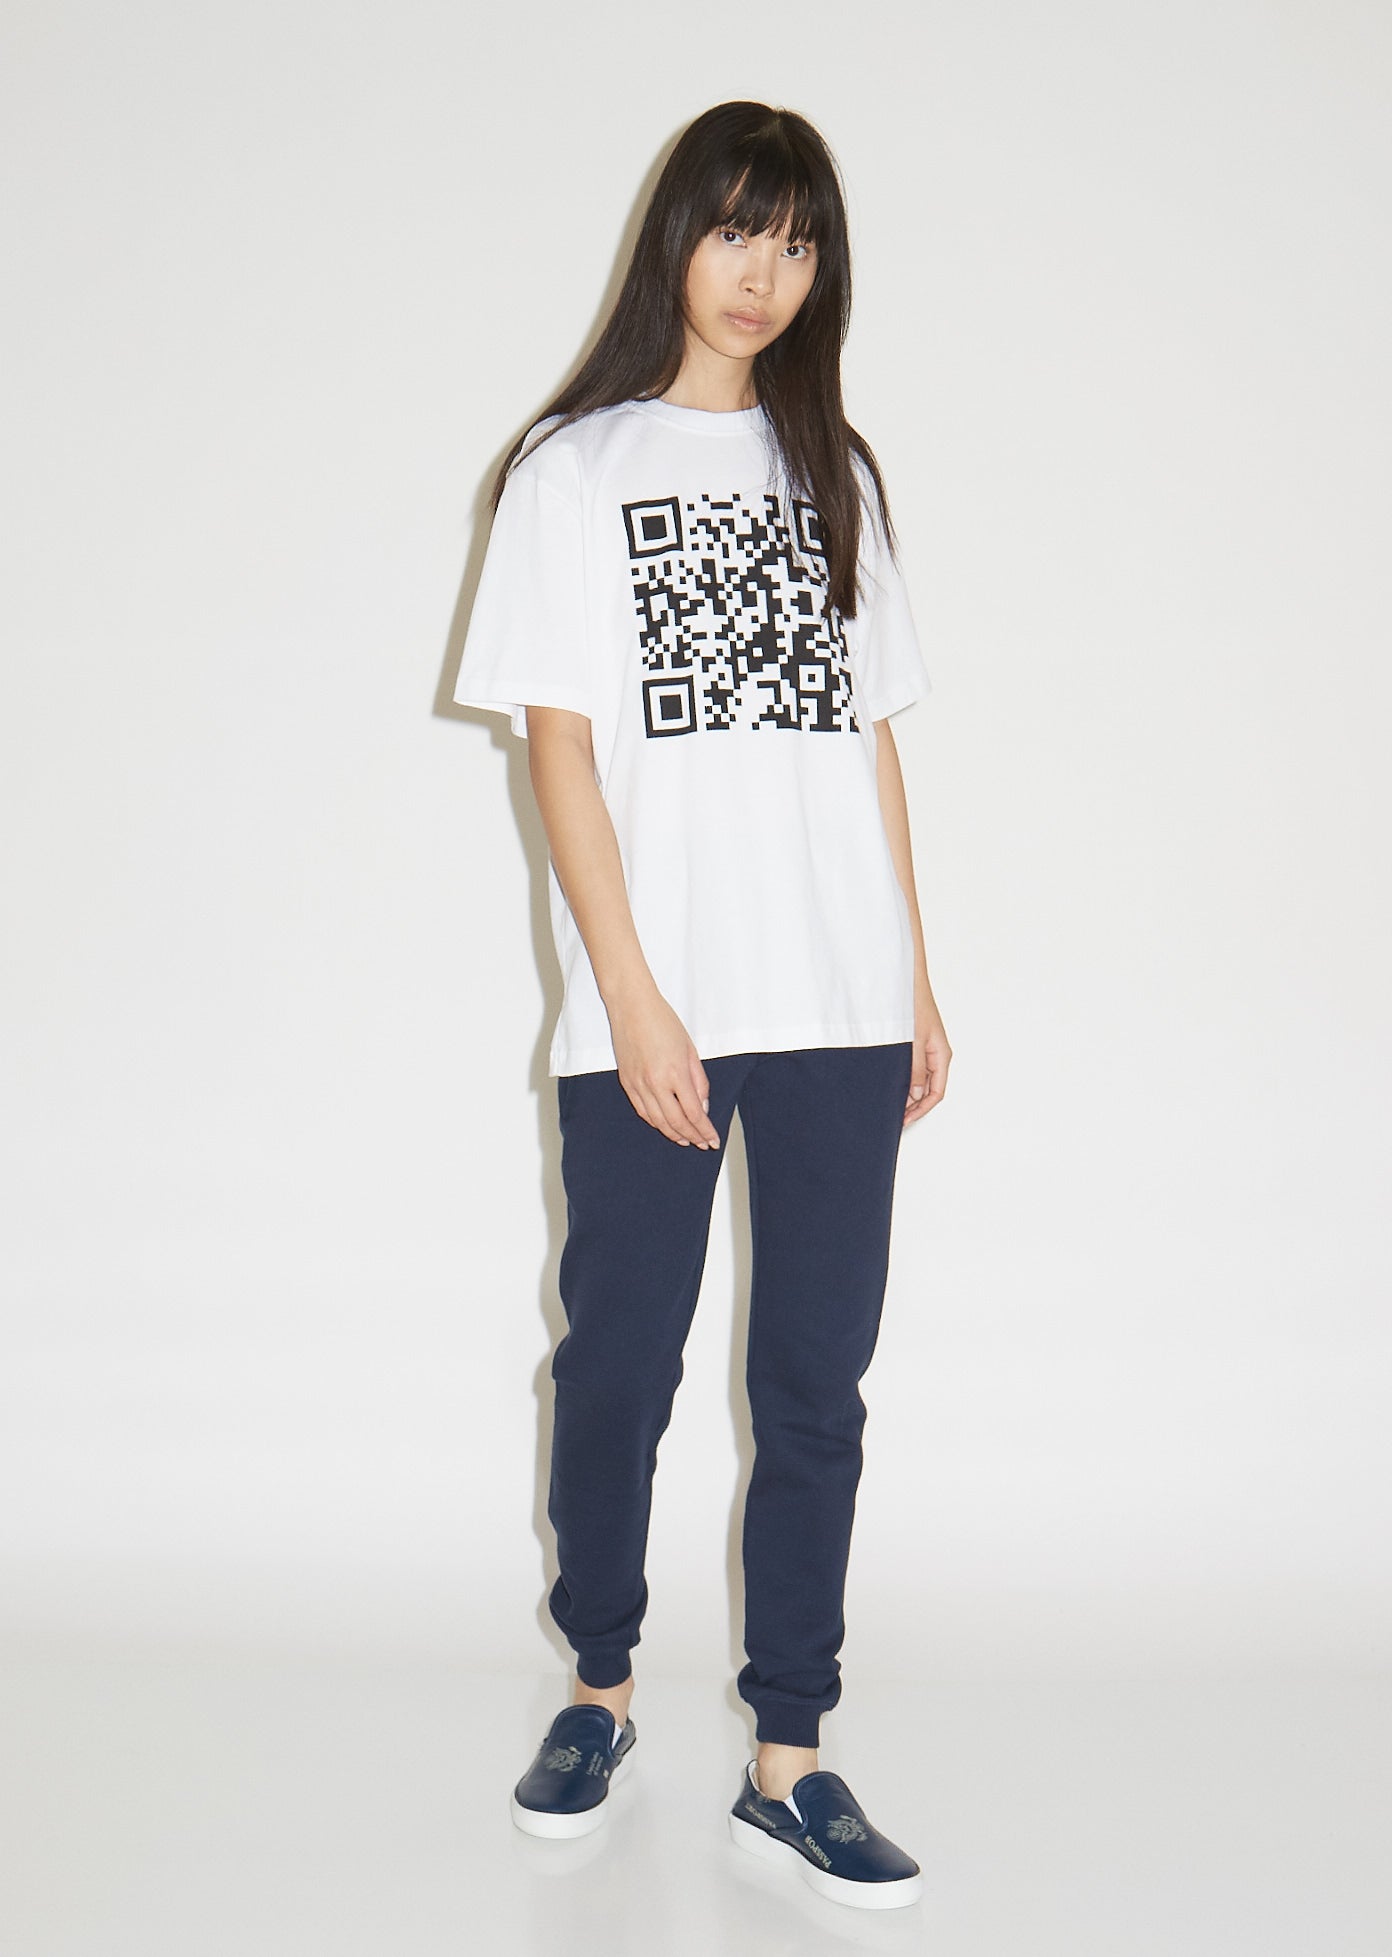 QR Garçonne – Code T-Shirt La